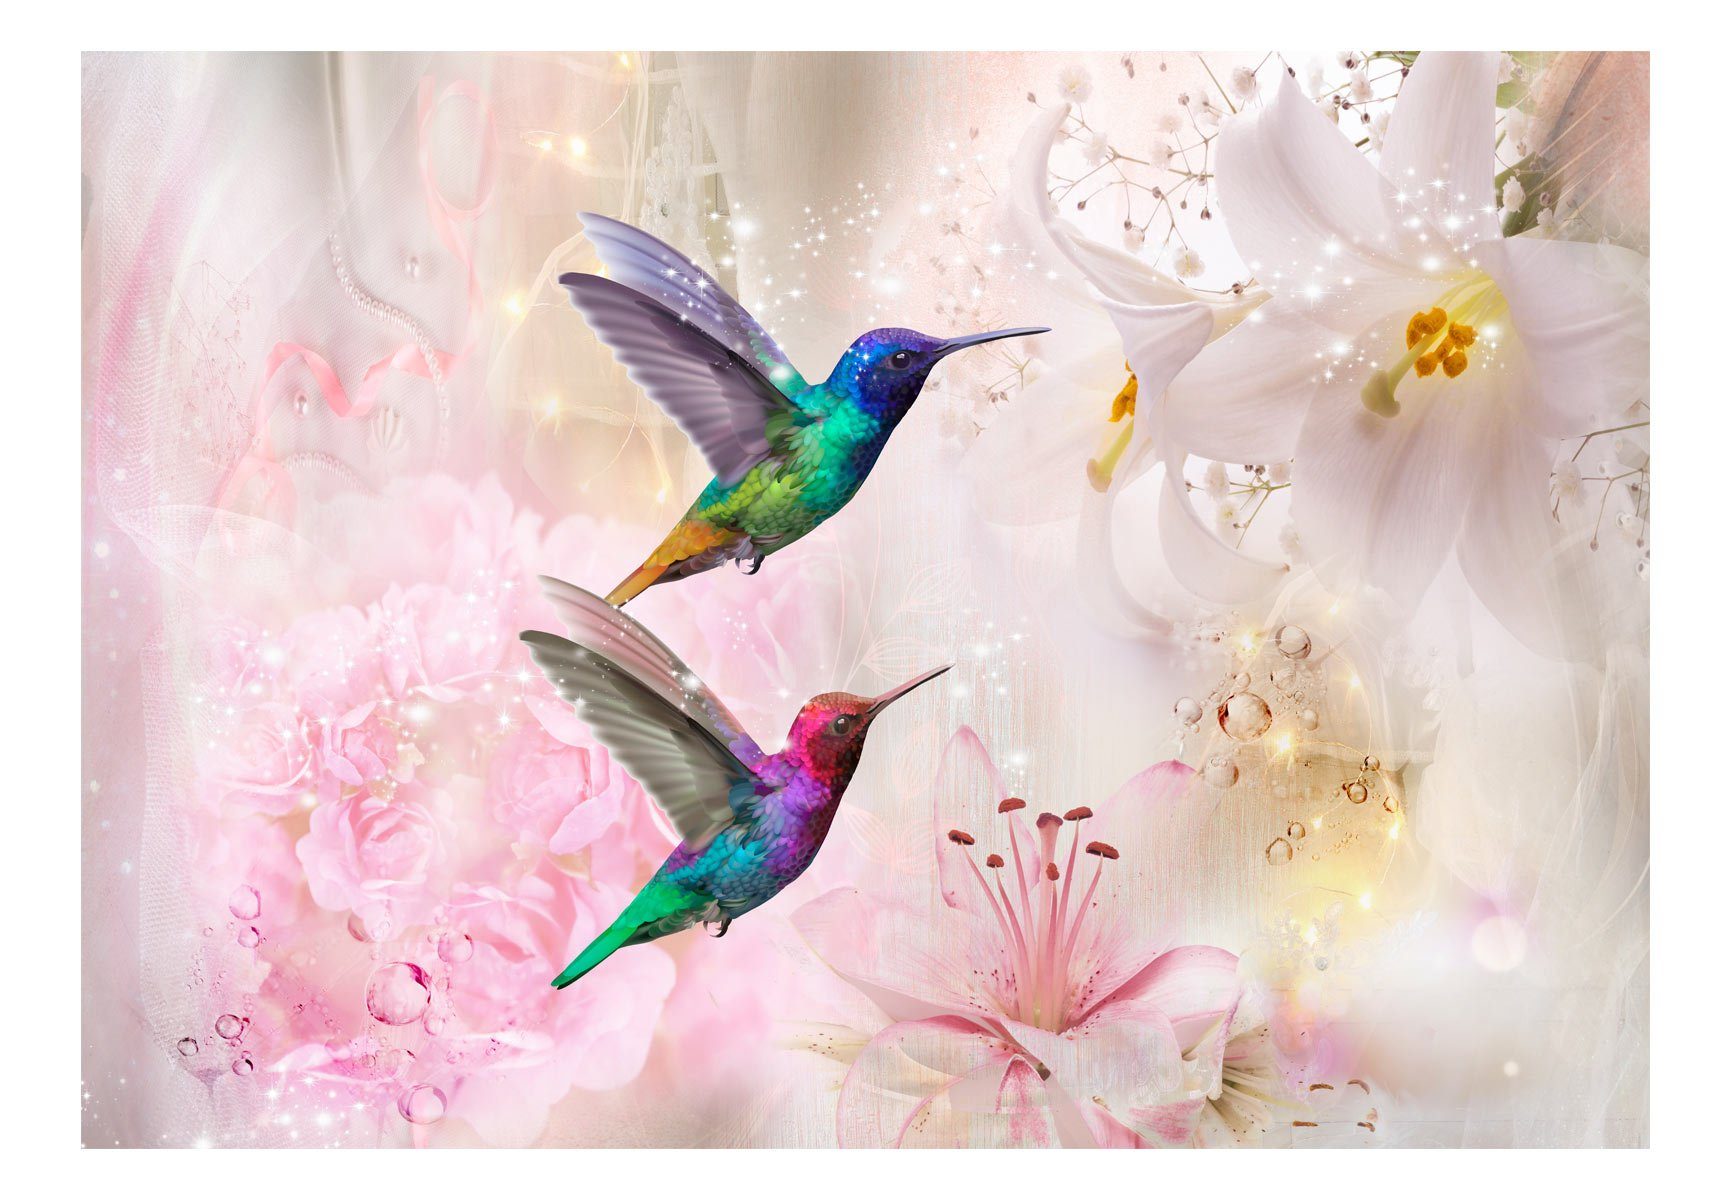 matt, lichtbeständige Vliestapete Colourful (Pink) Tapete KUNSTLOFT Hummingbirds 0.98x0.7 Design m,